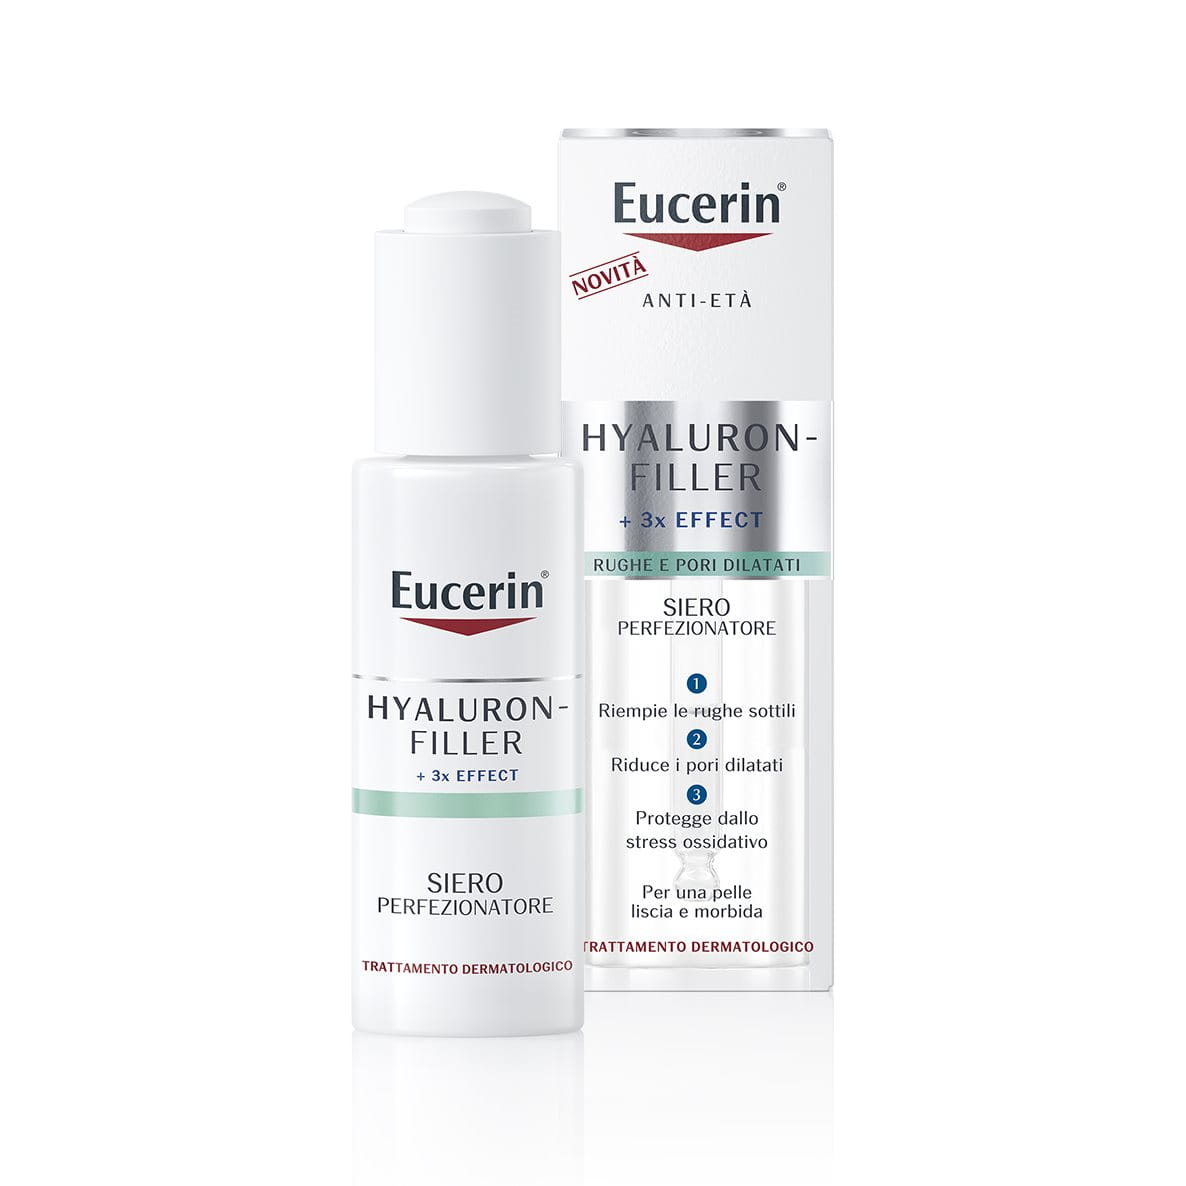 Eucerin Hyaluron-Filler Siero Perfezionatore